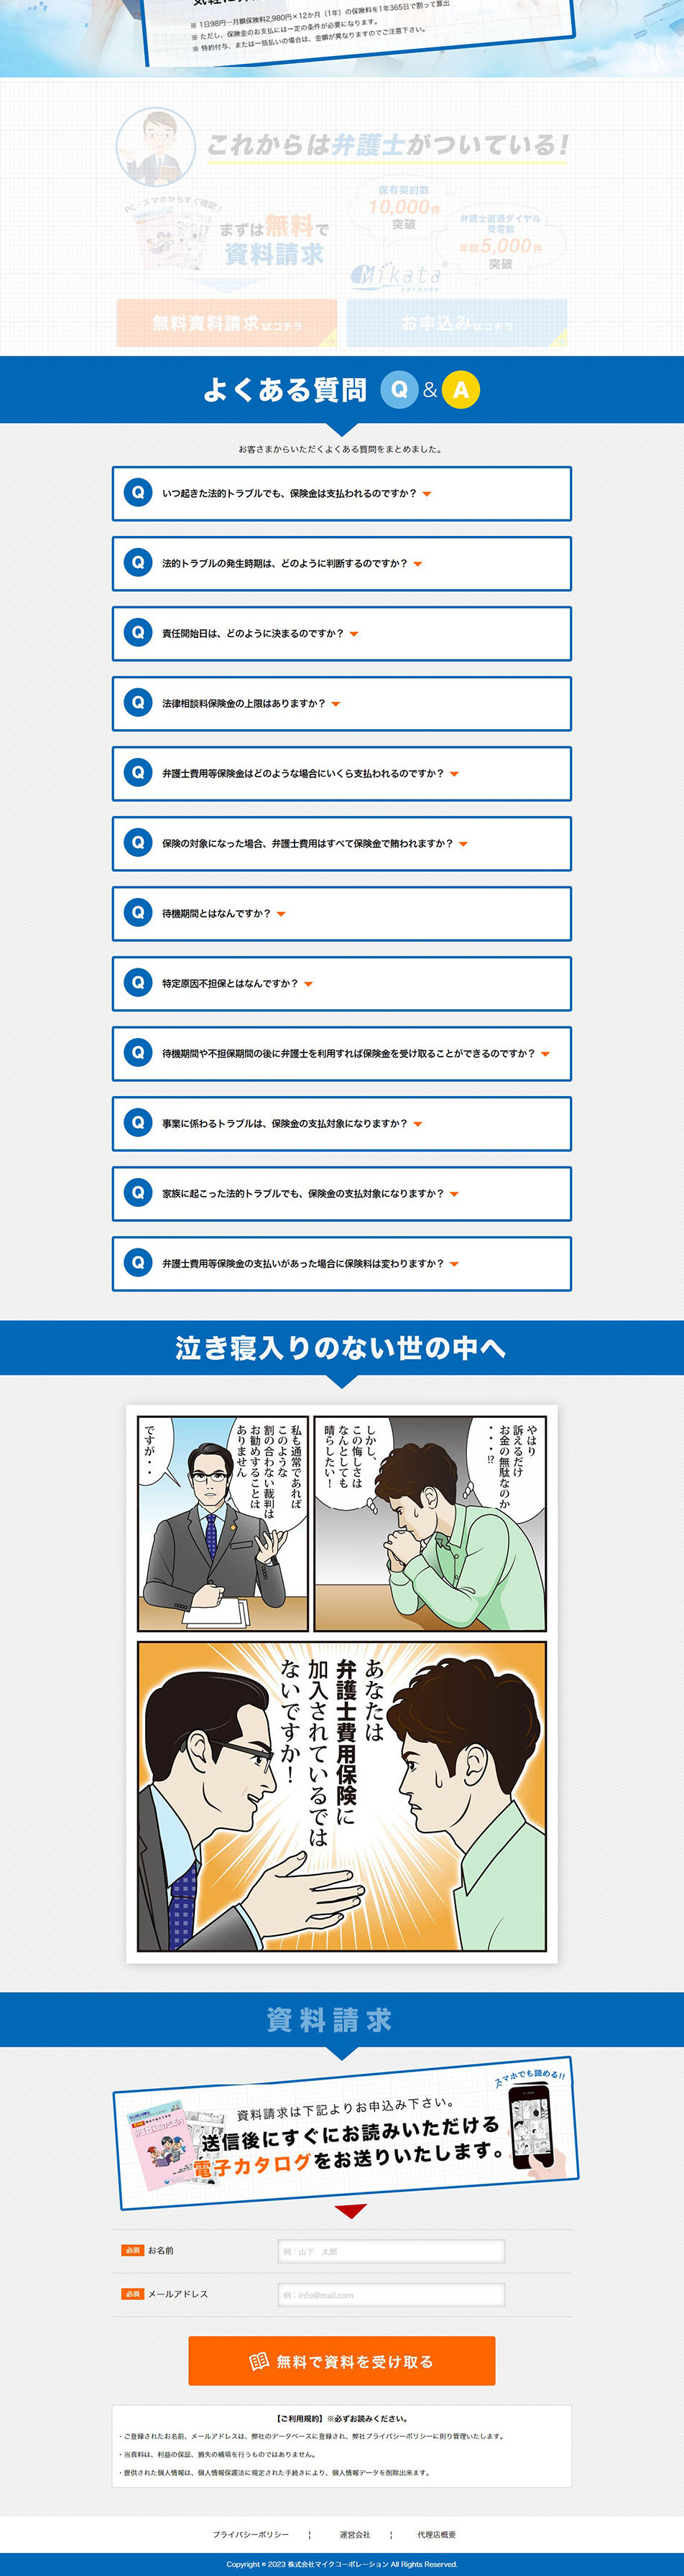 弁護士費用保険Mikata_pc_2